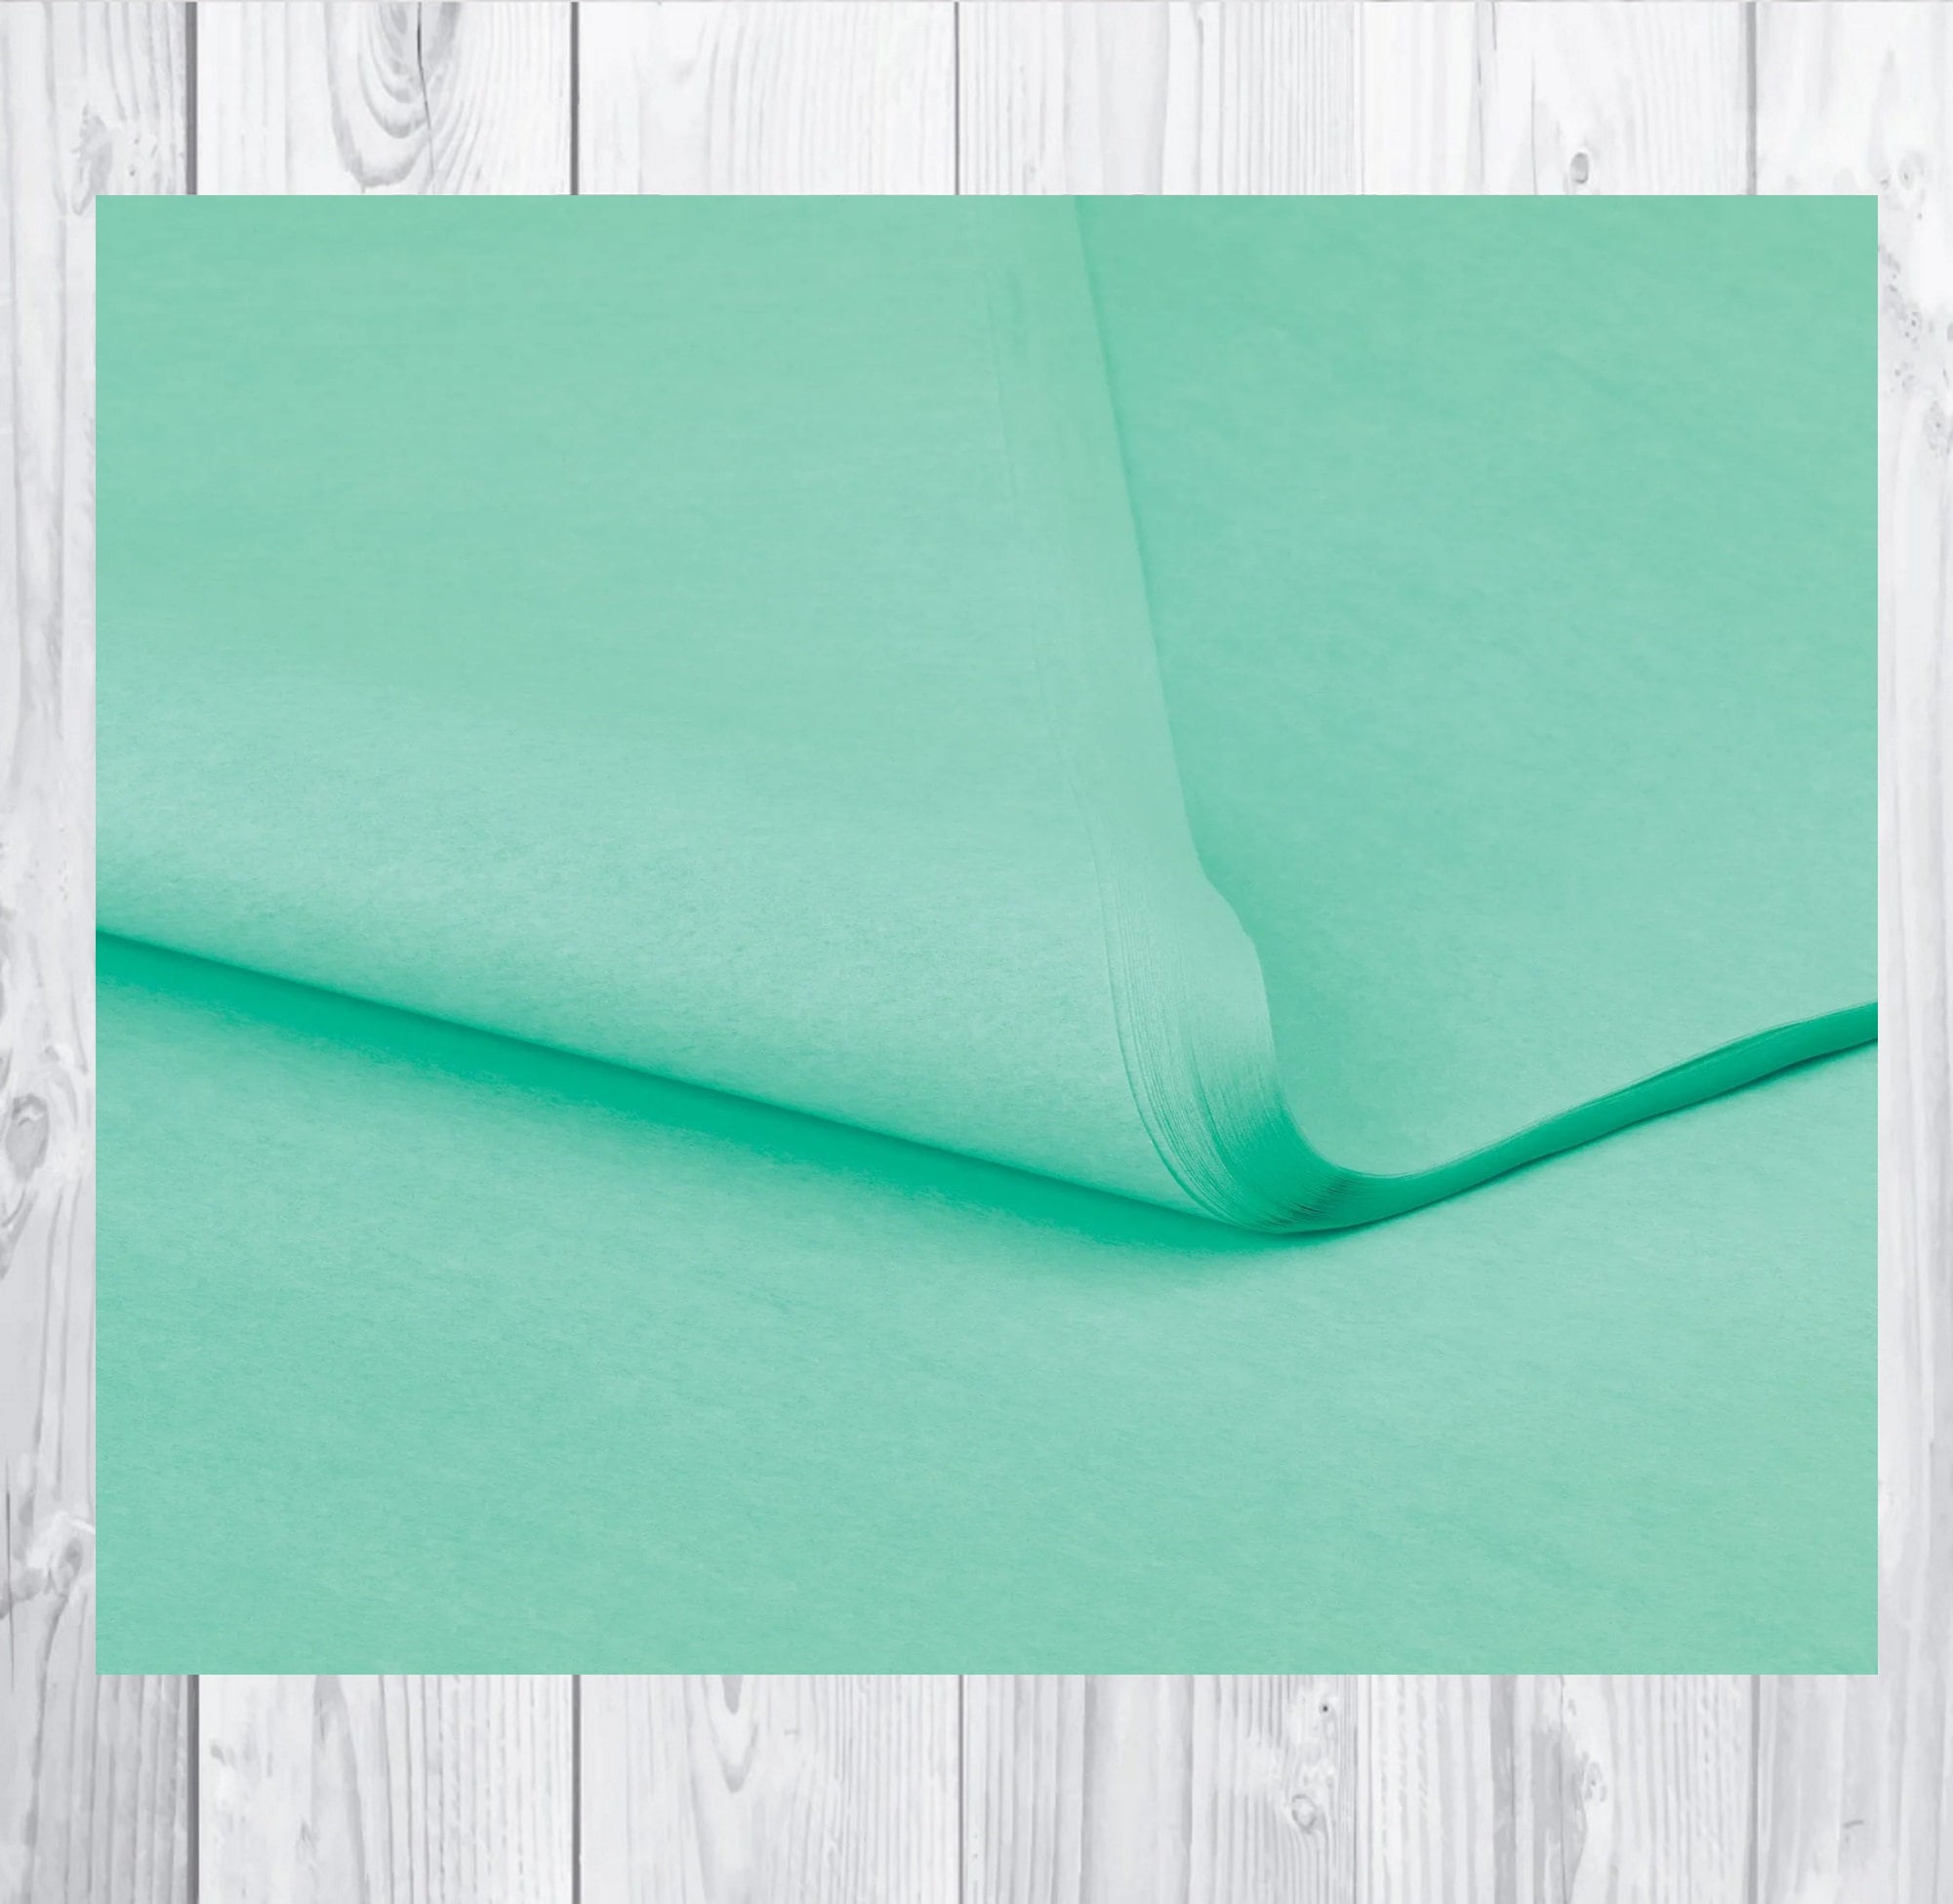 Hojas de papel de seda de color blanco para embalaje 50x75cm